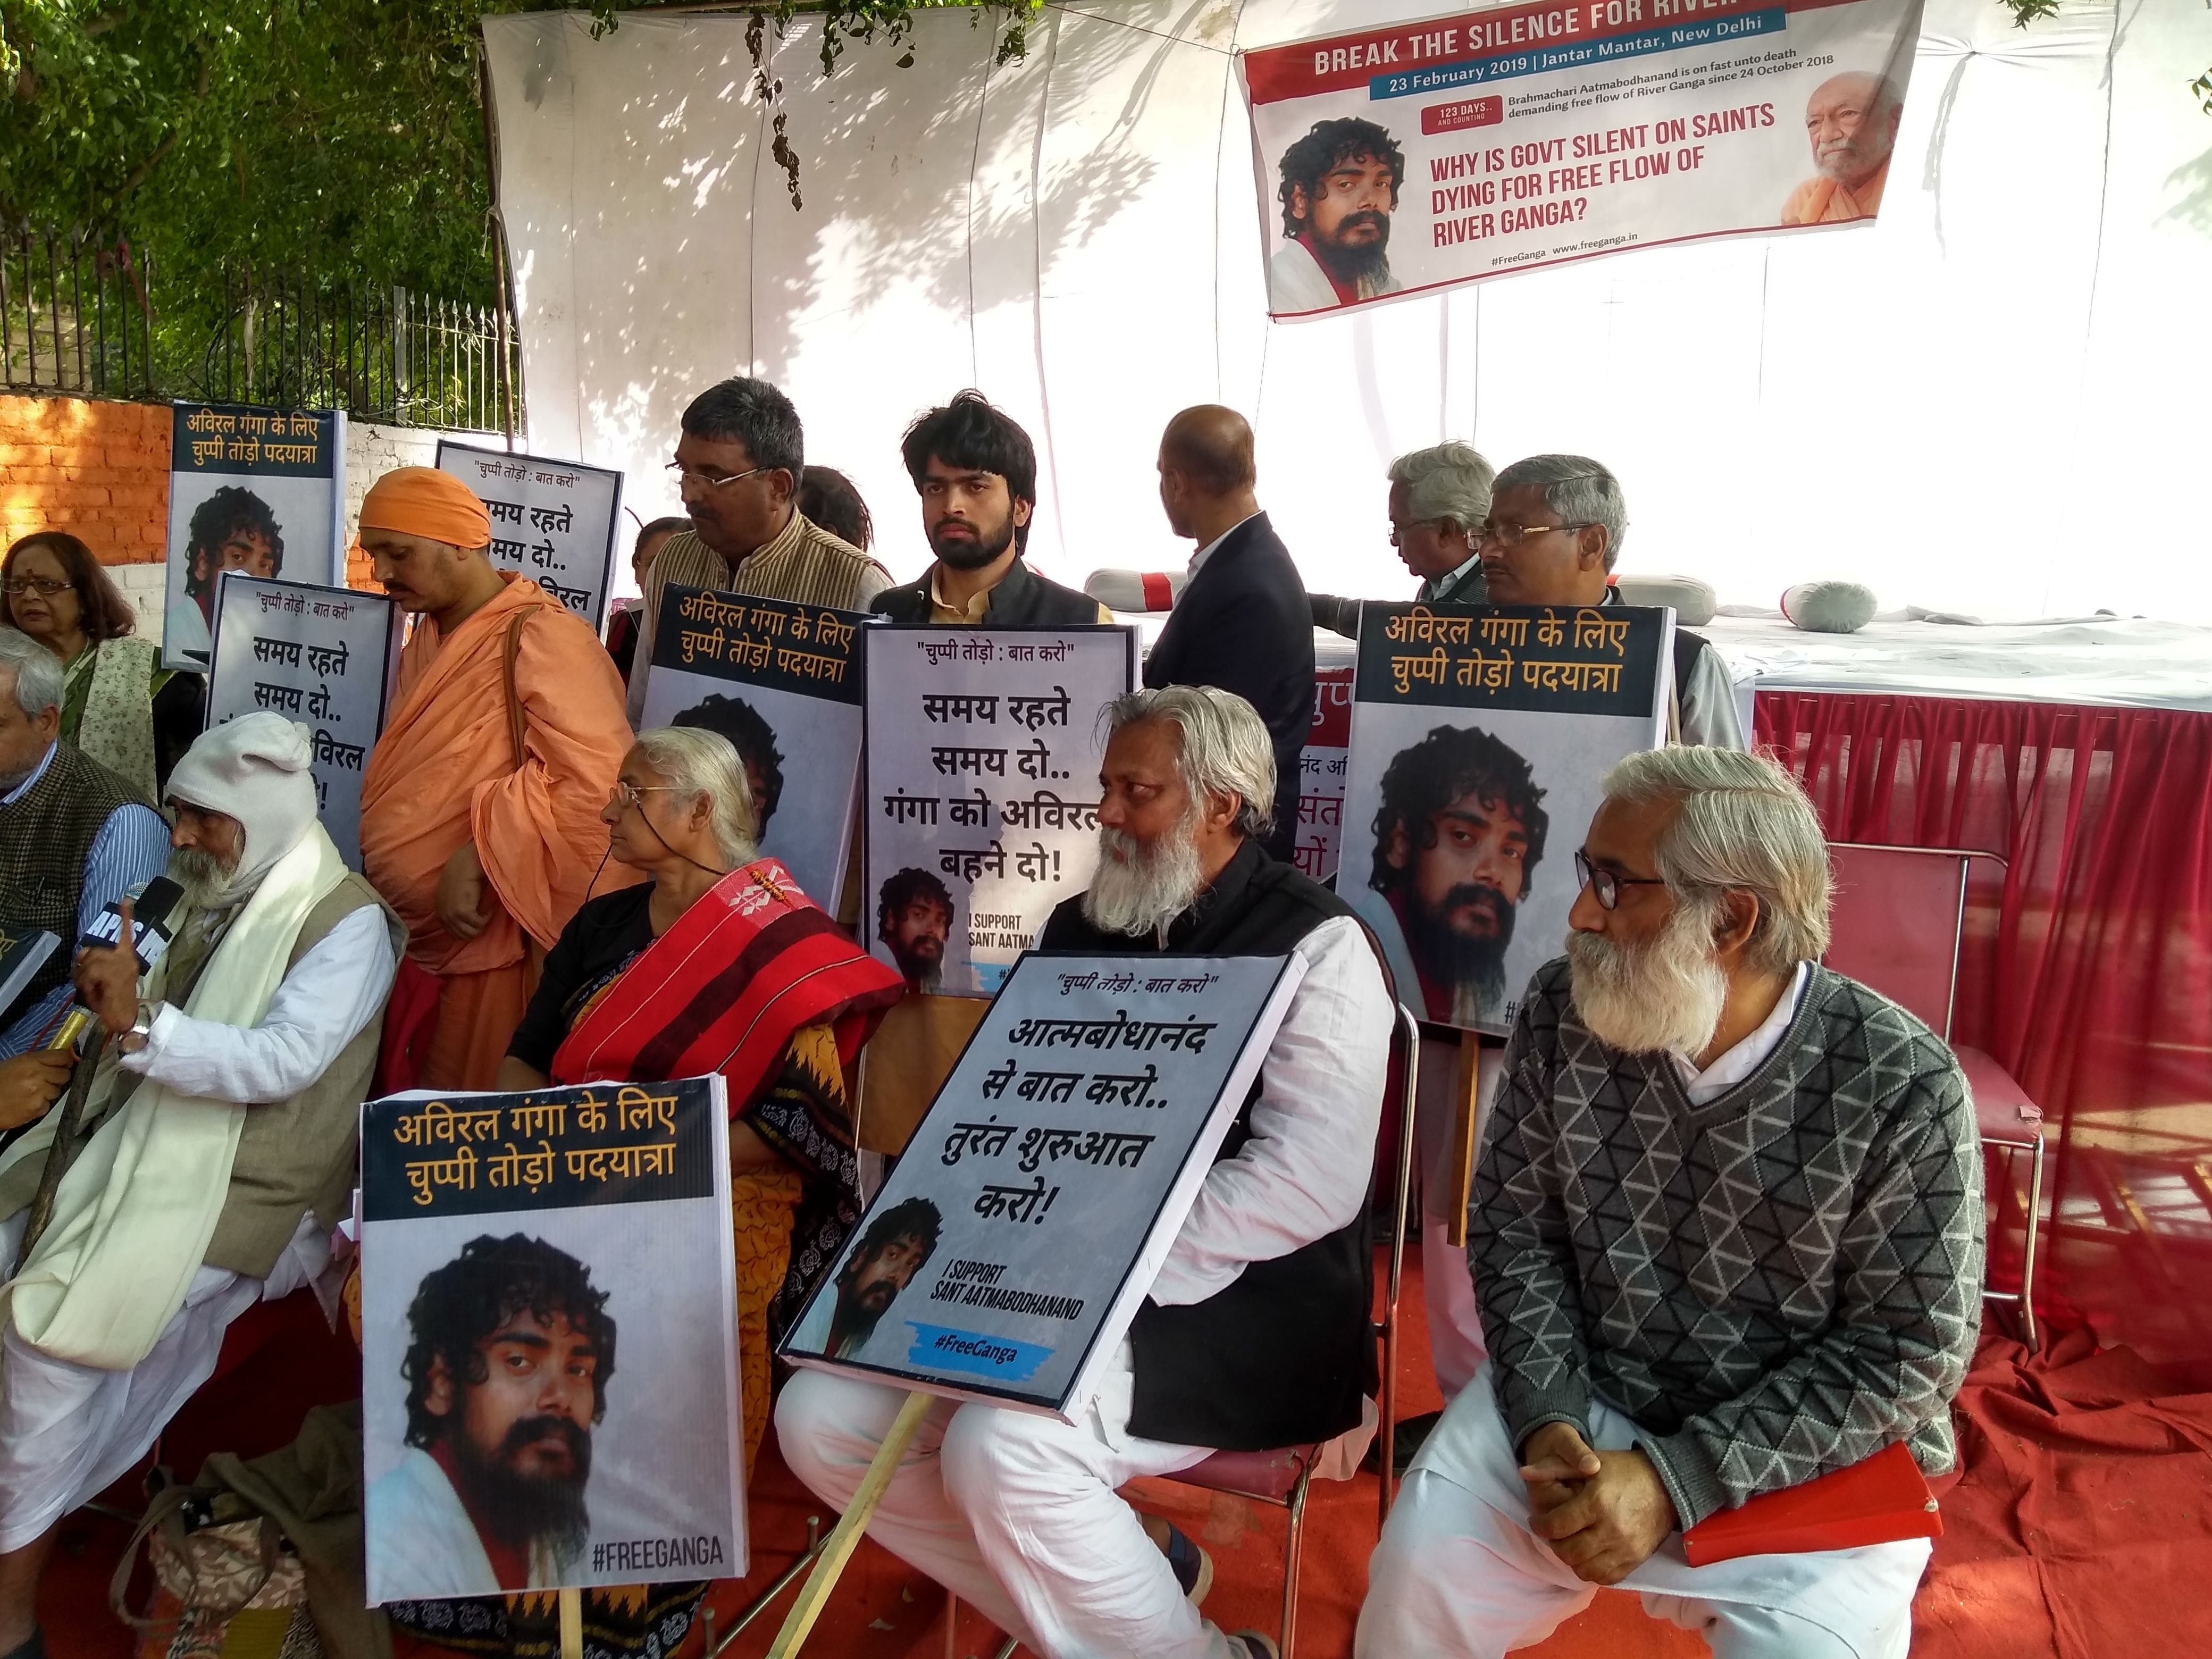 News on Free Ganga Movement